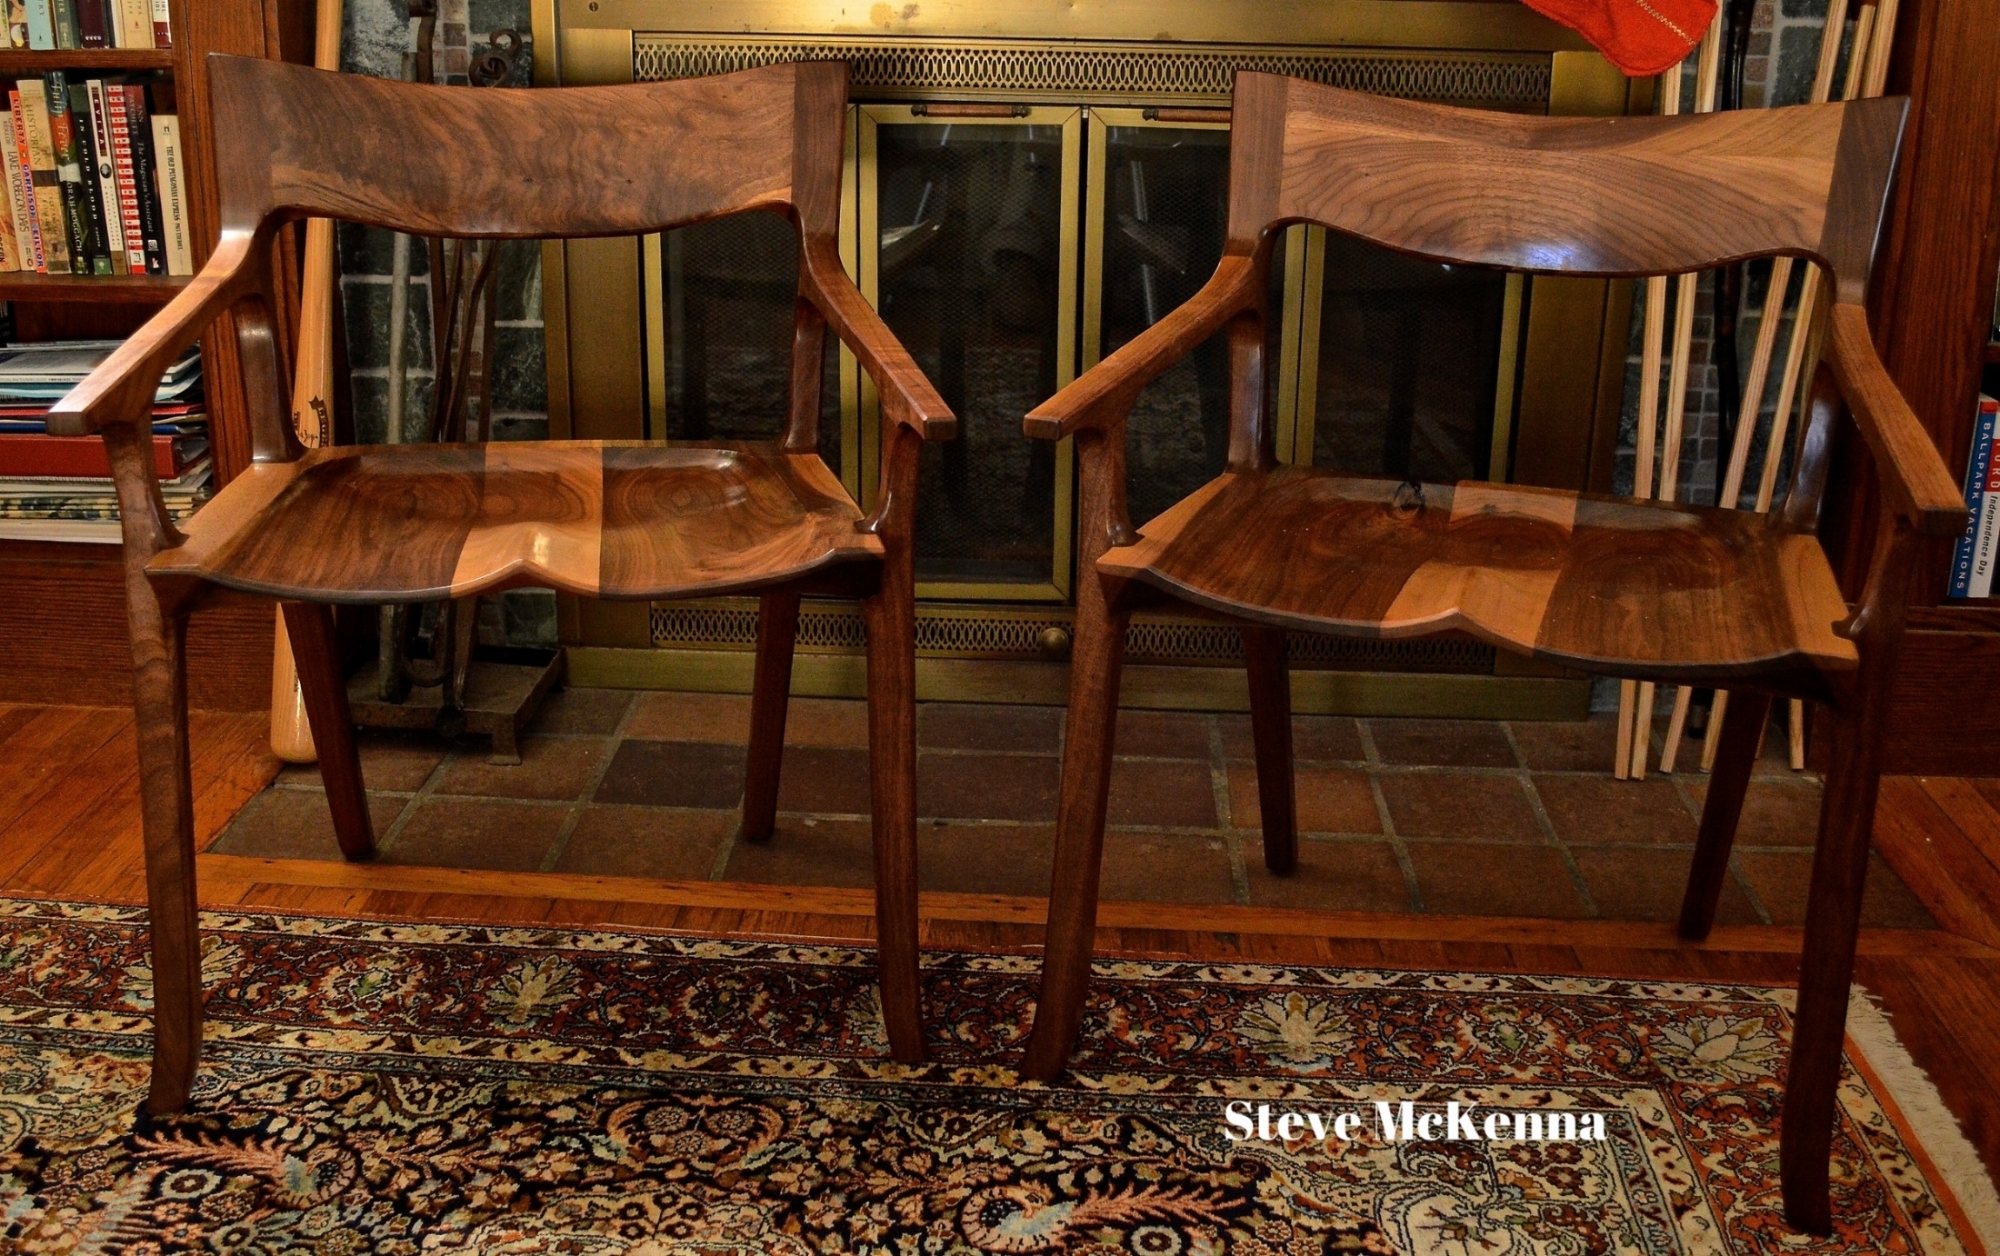 Steve Mckenna Chairs.JPG